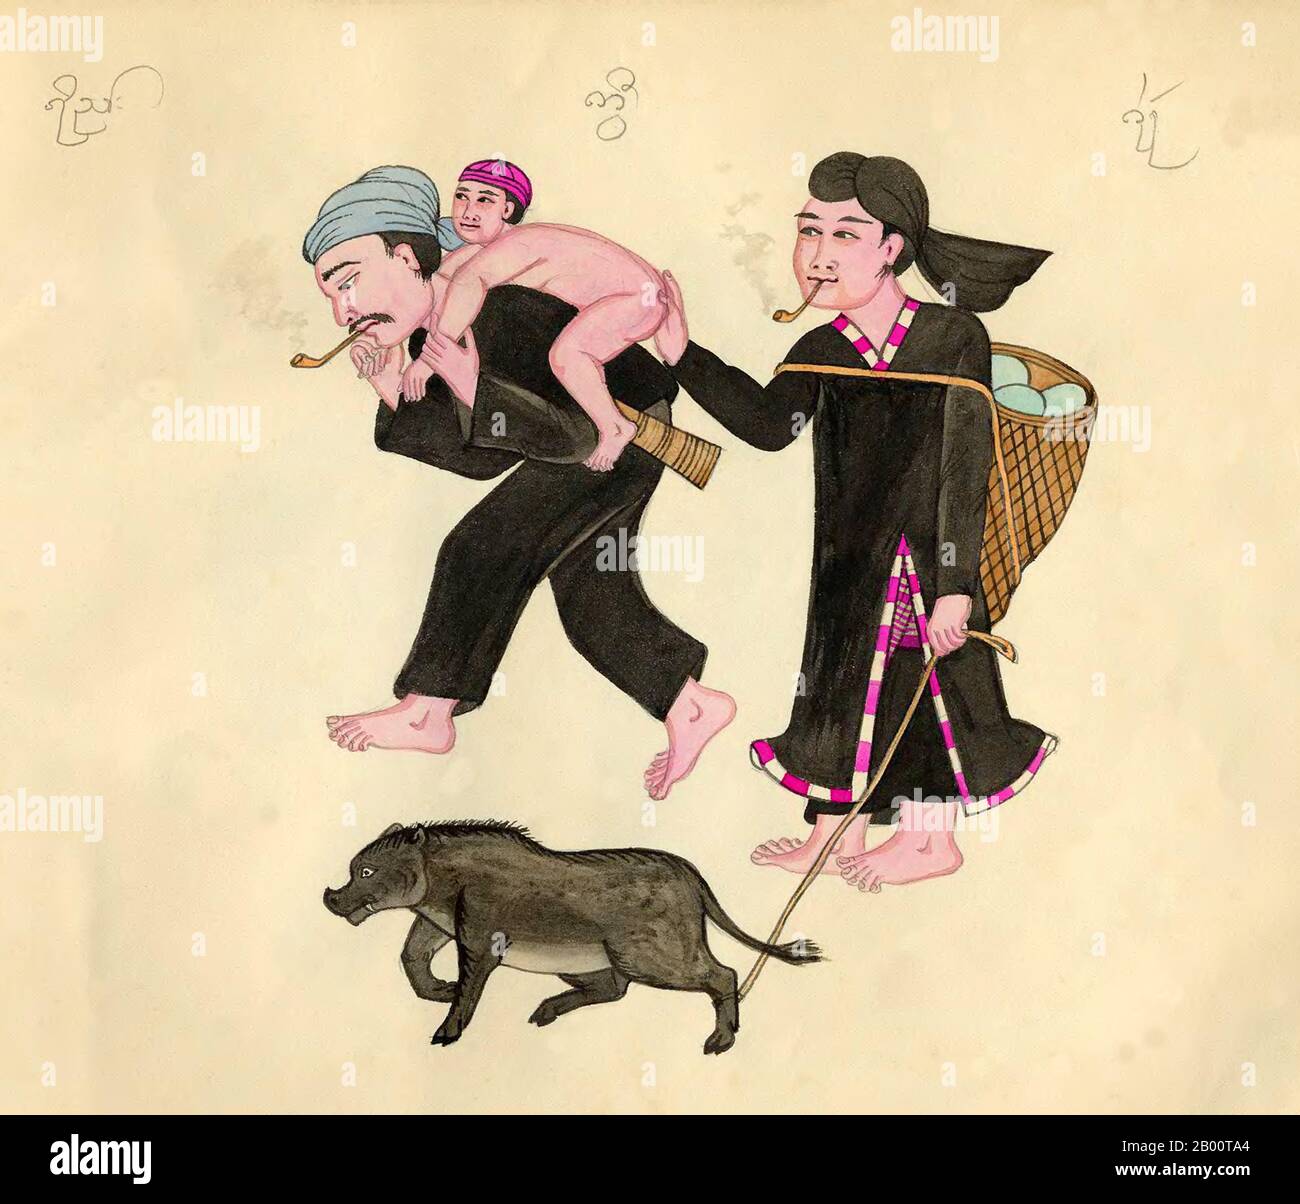 Burma/Myanmar: Eine Lahu-Familie in traditioneller Tracht mit Schwein an der Leine. Die burmesischen und Shan-Bildunterschriften identifizieren sie als 'Kwee'. Ein handgezeichnetes, handkoloriertes Aquarell aus dem späten 19. Jahrhundert von einem unbekannten burmesischen Künstler. Der Name der ethnischen Gruppe erscheint oben im Bild in der Shan-Schrift (links), der burmesischen Schrift (Mitte) und der Khun-Schrift (rechts). Die Khun-Schrift wurde früher in Kengtung/Kyaingtong im östlichen Shan-Staat und in Lan Na oder Lanna im Norden Thailands verwendet. Stockfoto